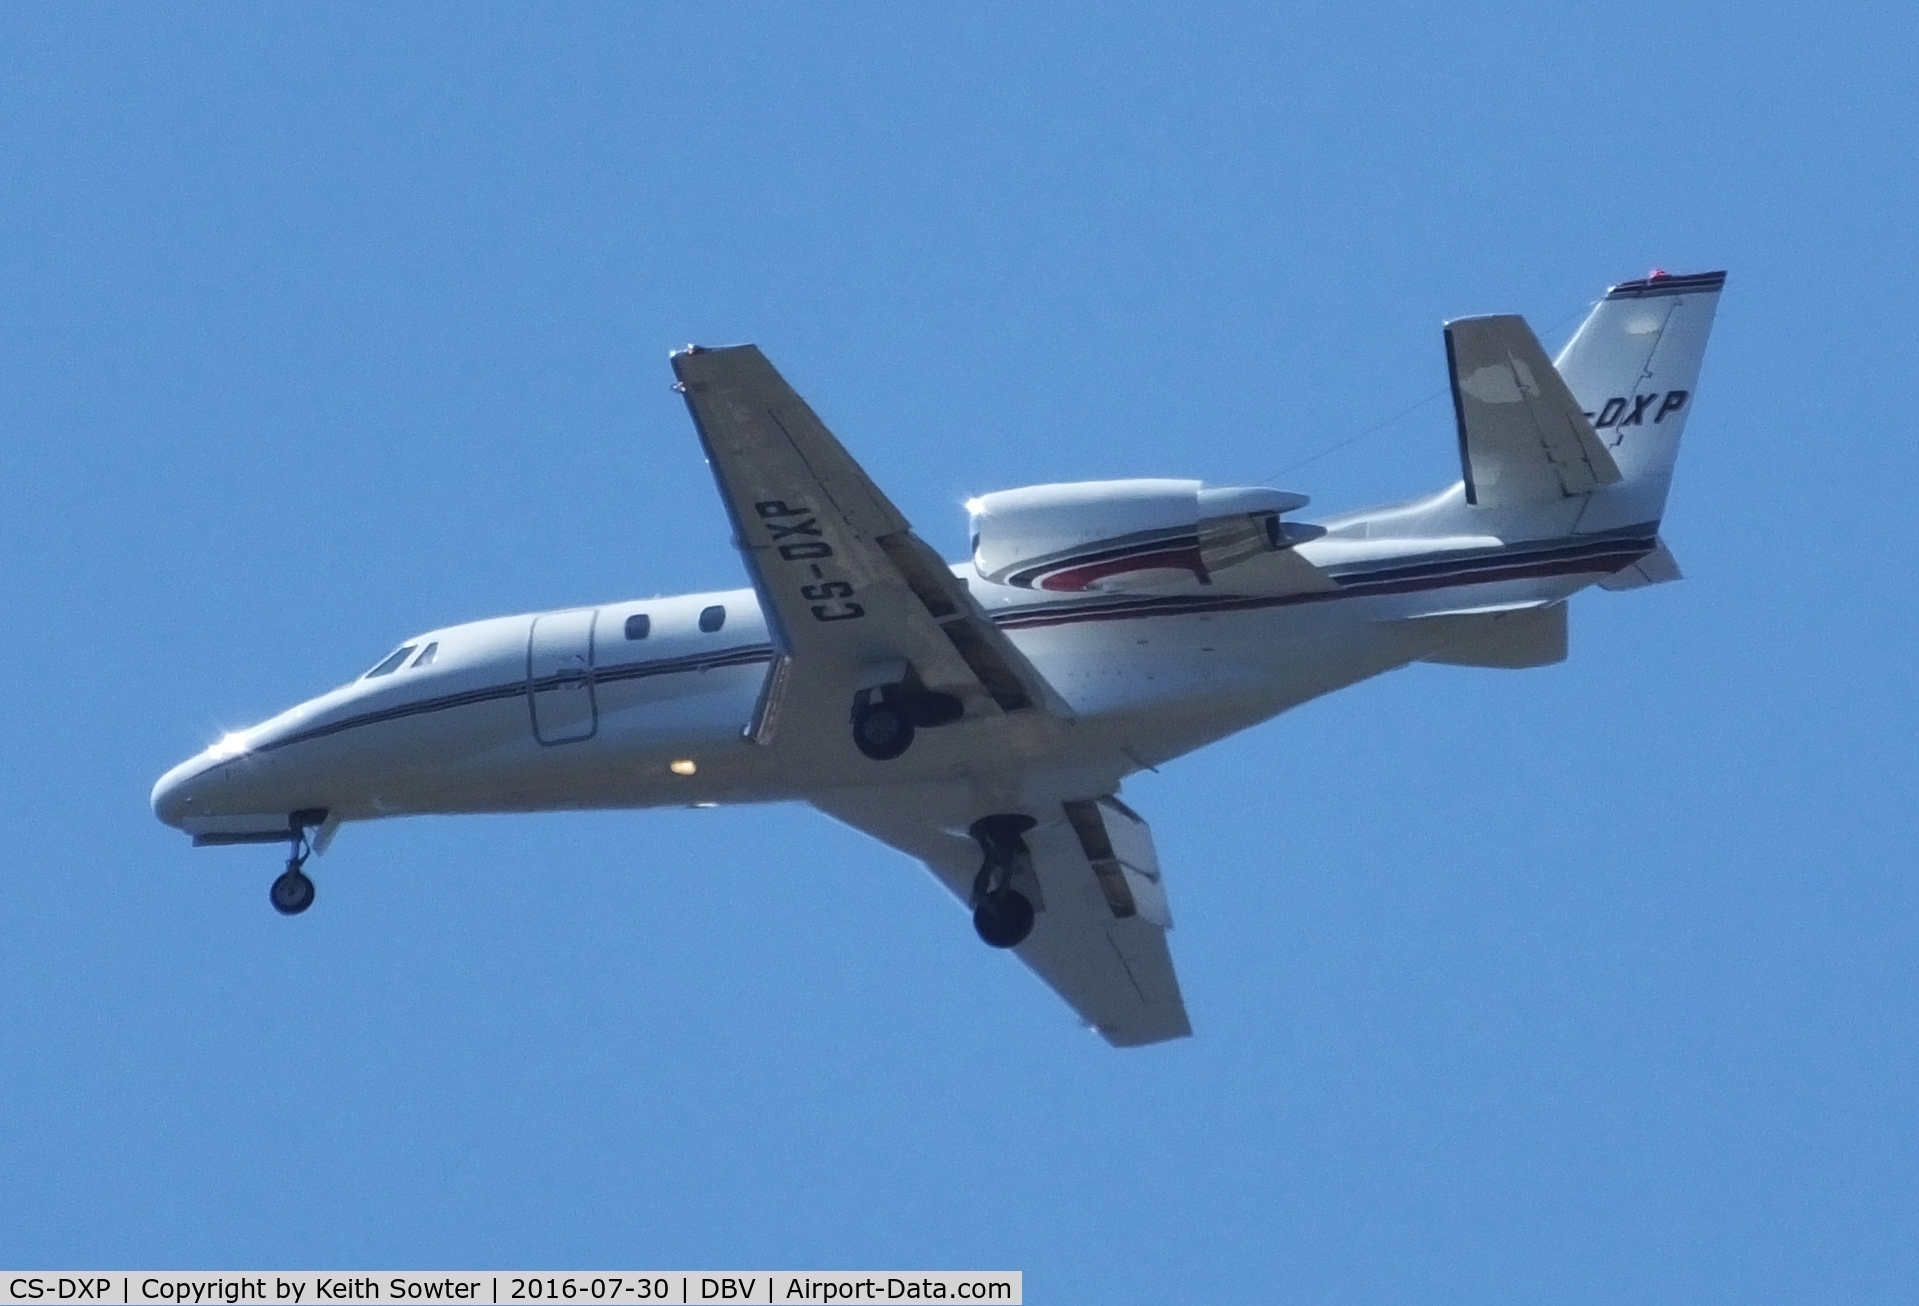 CS-DXP, 2007 Cessna 560XL Citation XLS C/N 560-5702, short finals at Dubrovnik